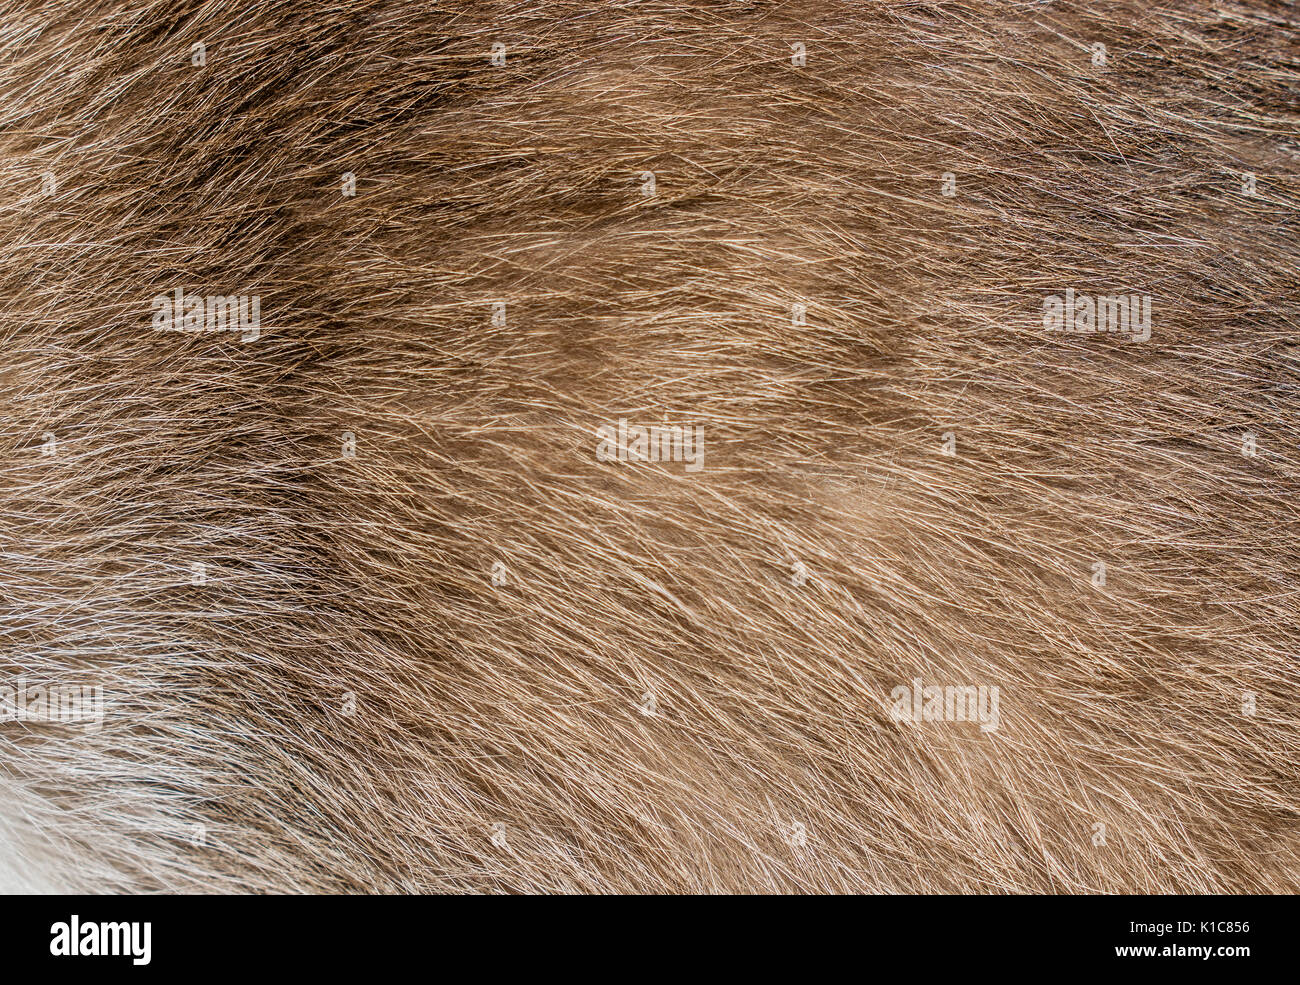 Brown, yellow and grey cat fur closeup Stock Photo